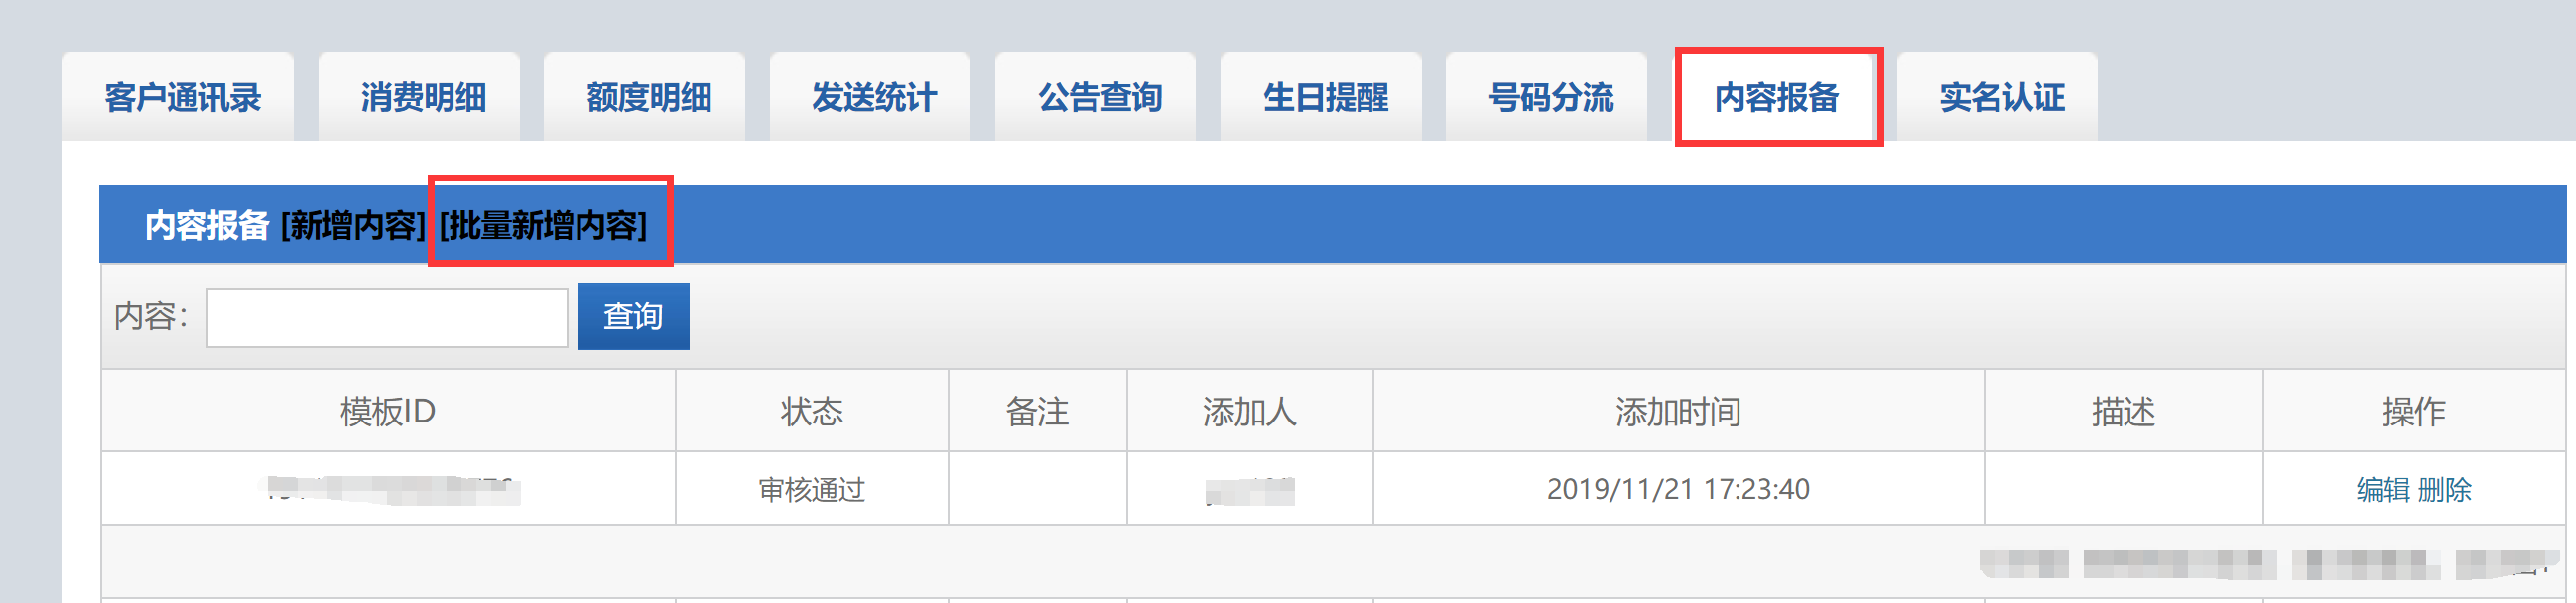 bwin·必赢(中国)唯一官方网站_活动9942